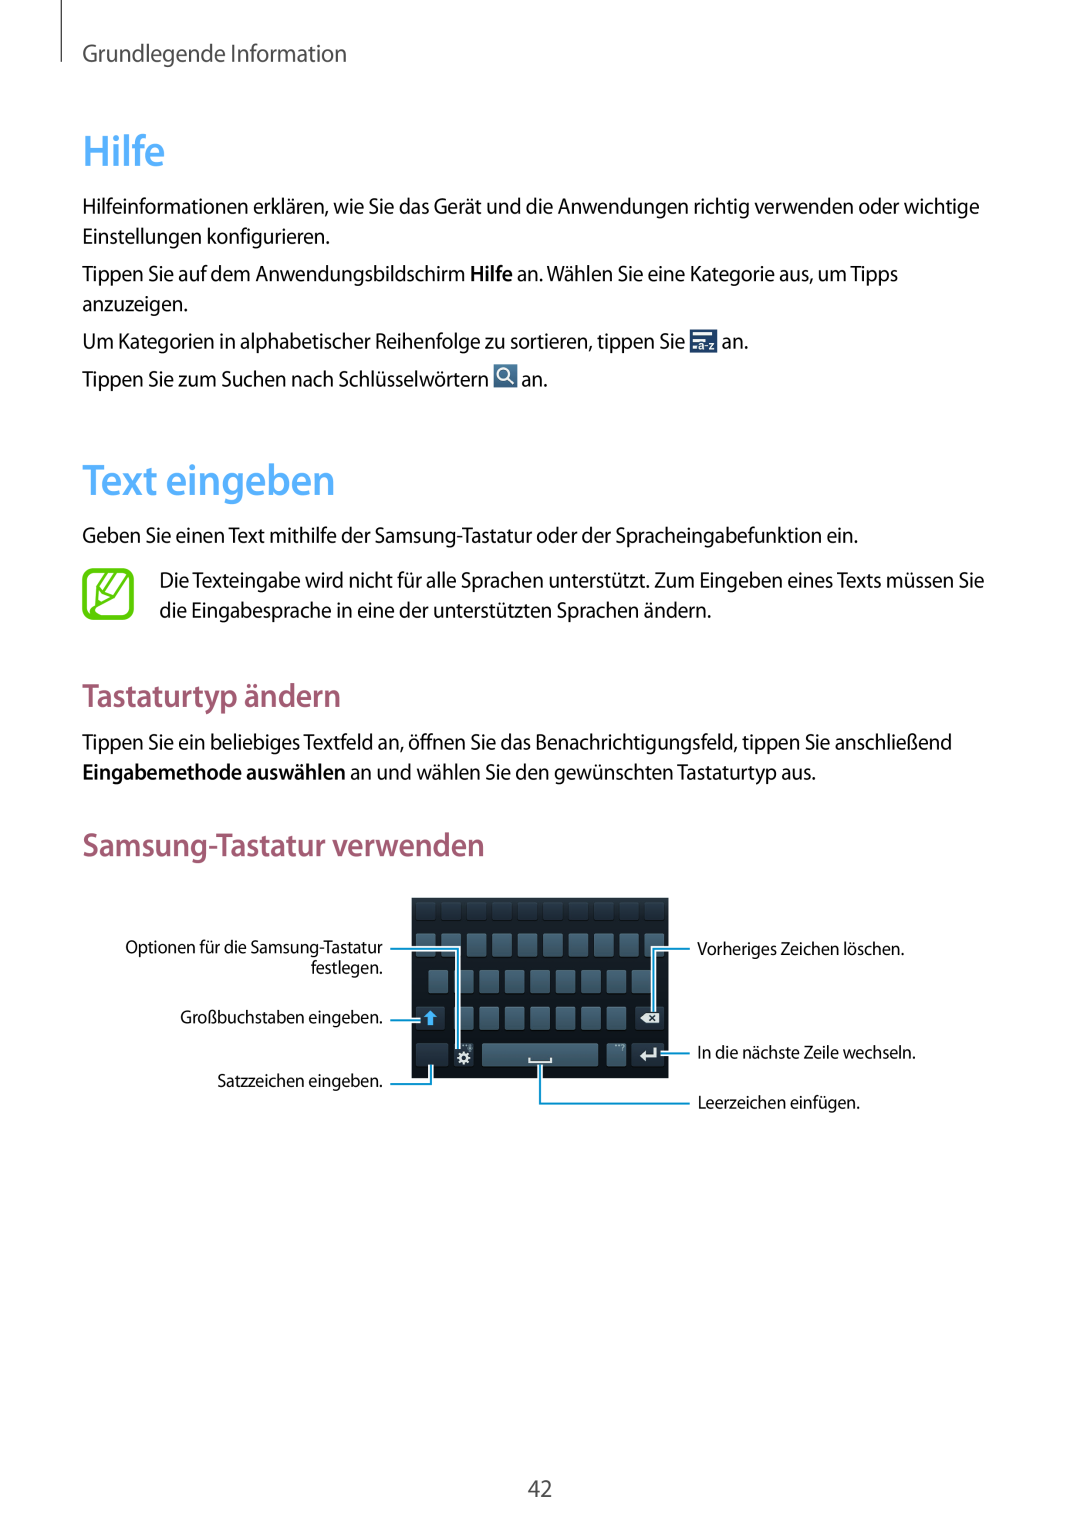 Samsung GT-I9505ZRZSEB Hilfe, Text eingeben, Tastaturtyp ändern, Samsung-Tastatur verwenden, Grundlegende Information 